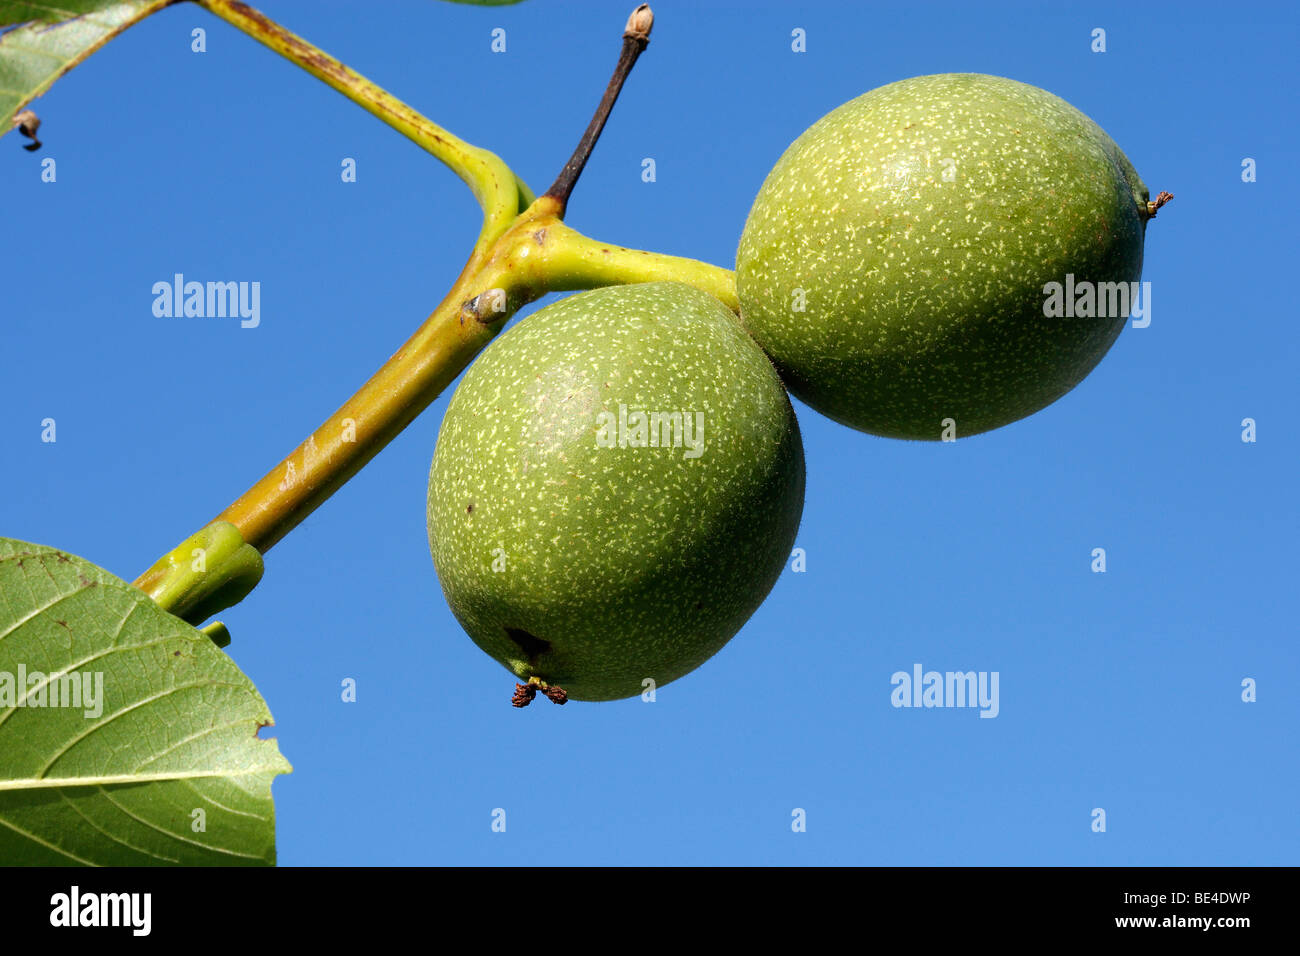 English Walnut, Persian Walnut (Juglans regia). Unripe fruit on a twig. Stock Photo